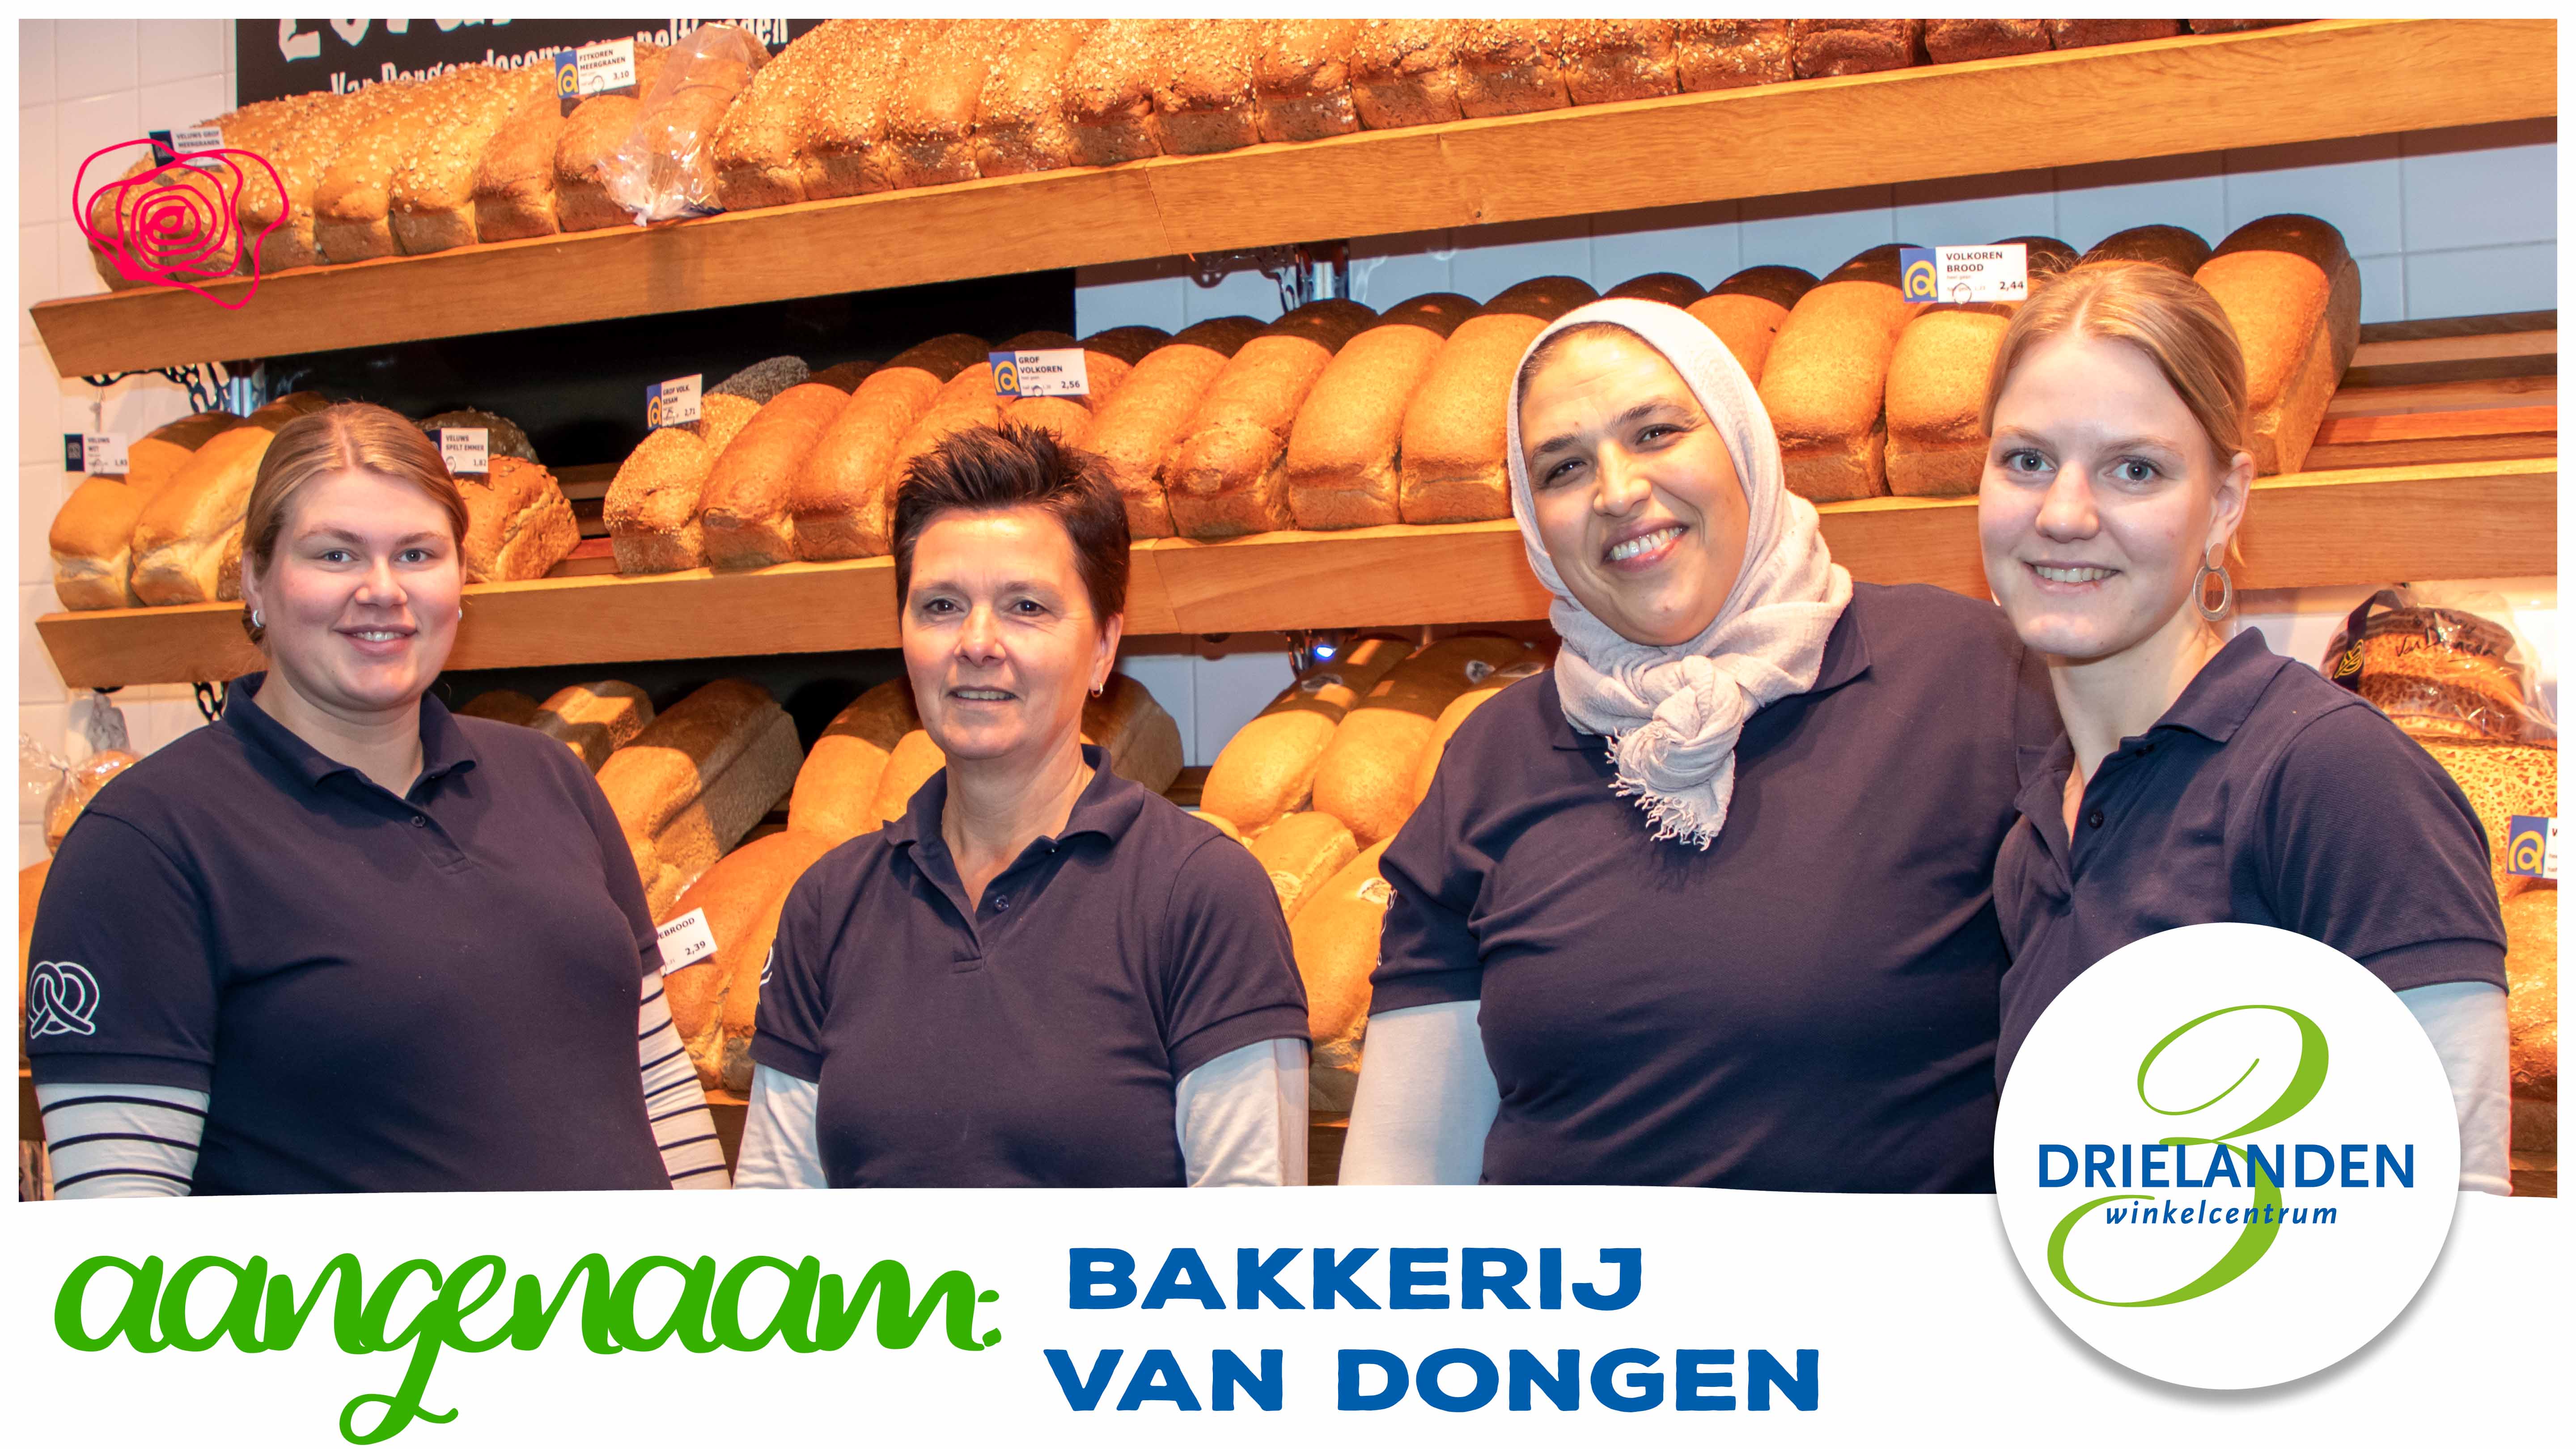 Bakkerij Van Dongen